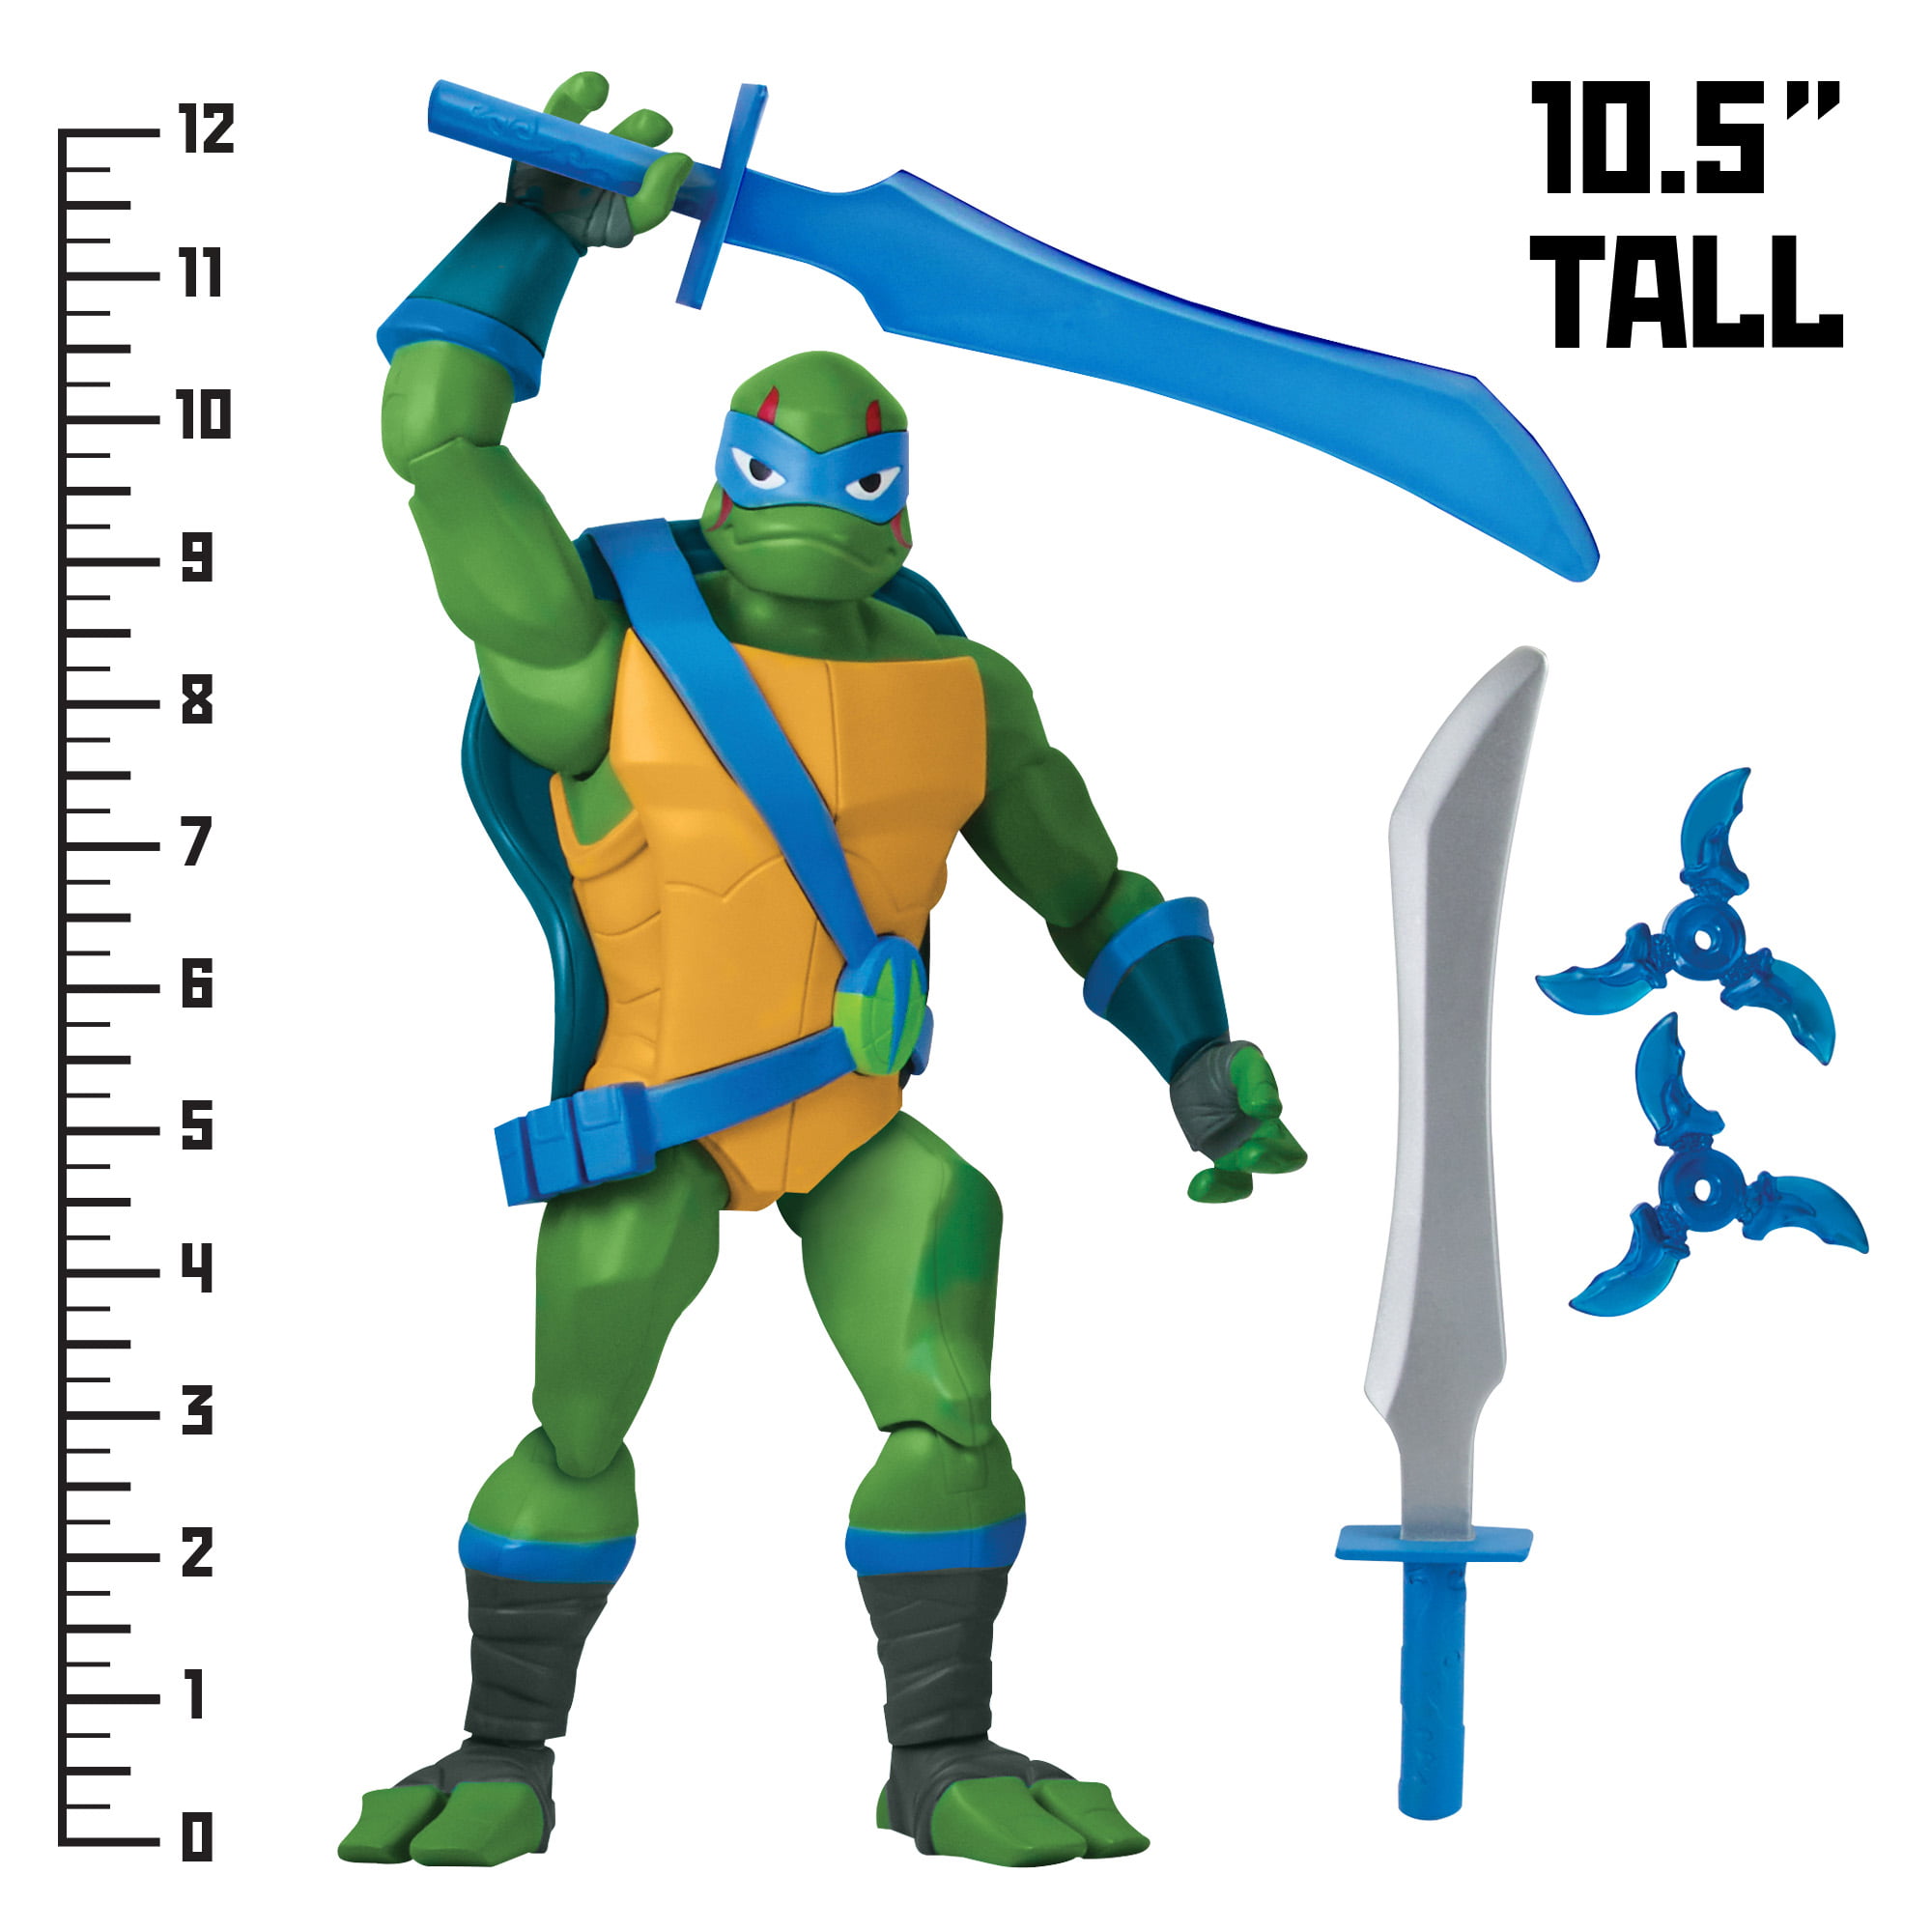 rise of the teenage mutant ninja turtles toy